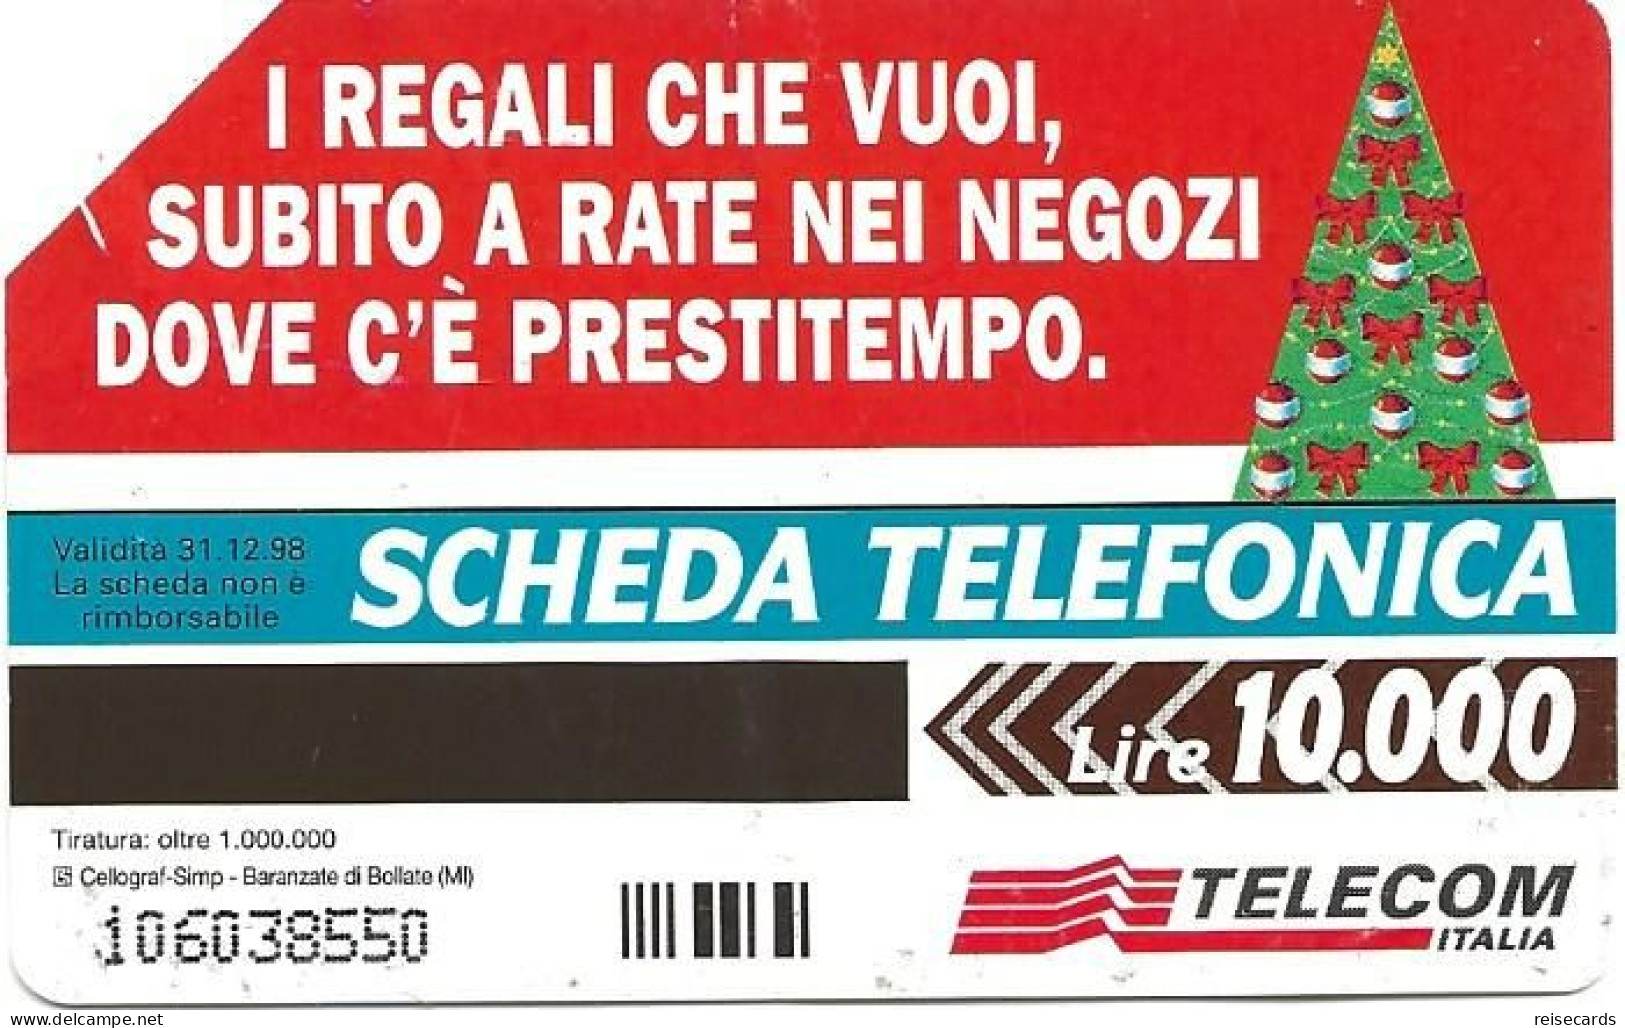 Italy: Telecom Italia - Buon Natale - Öff. Werbe-TK